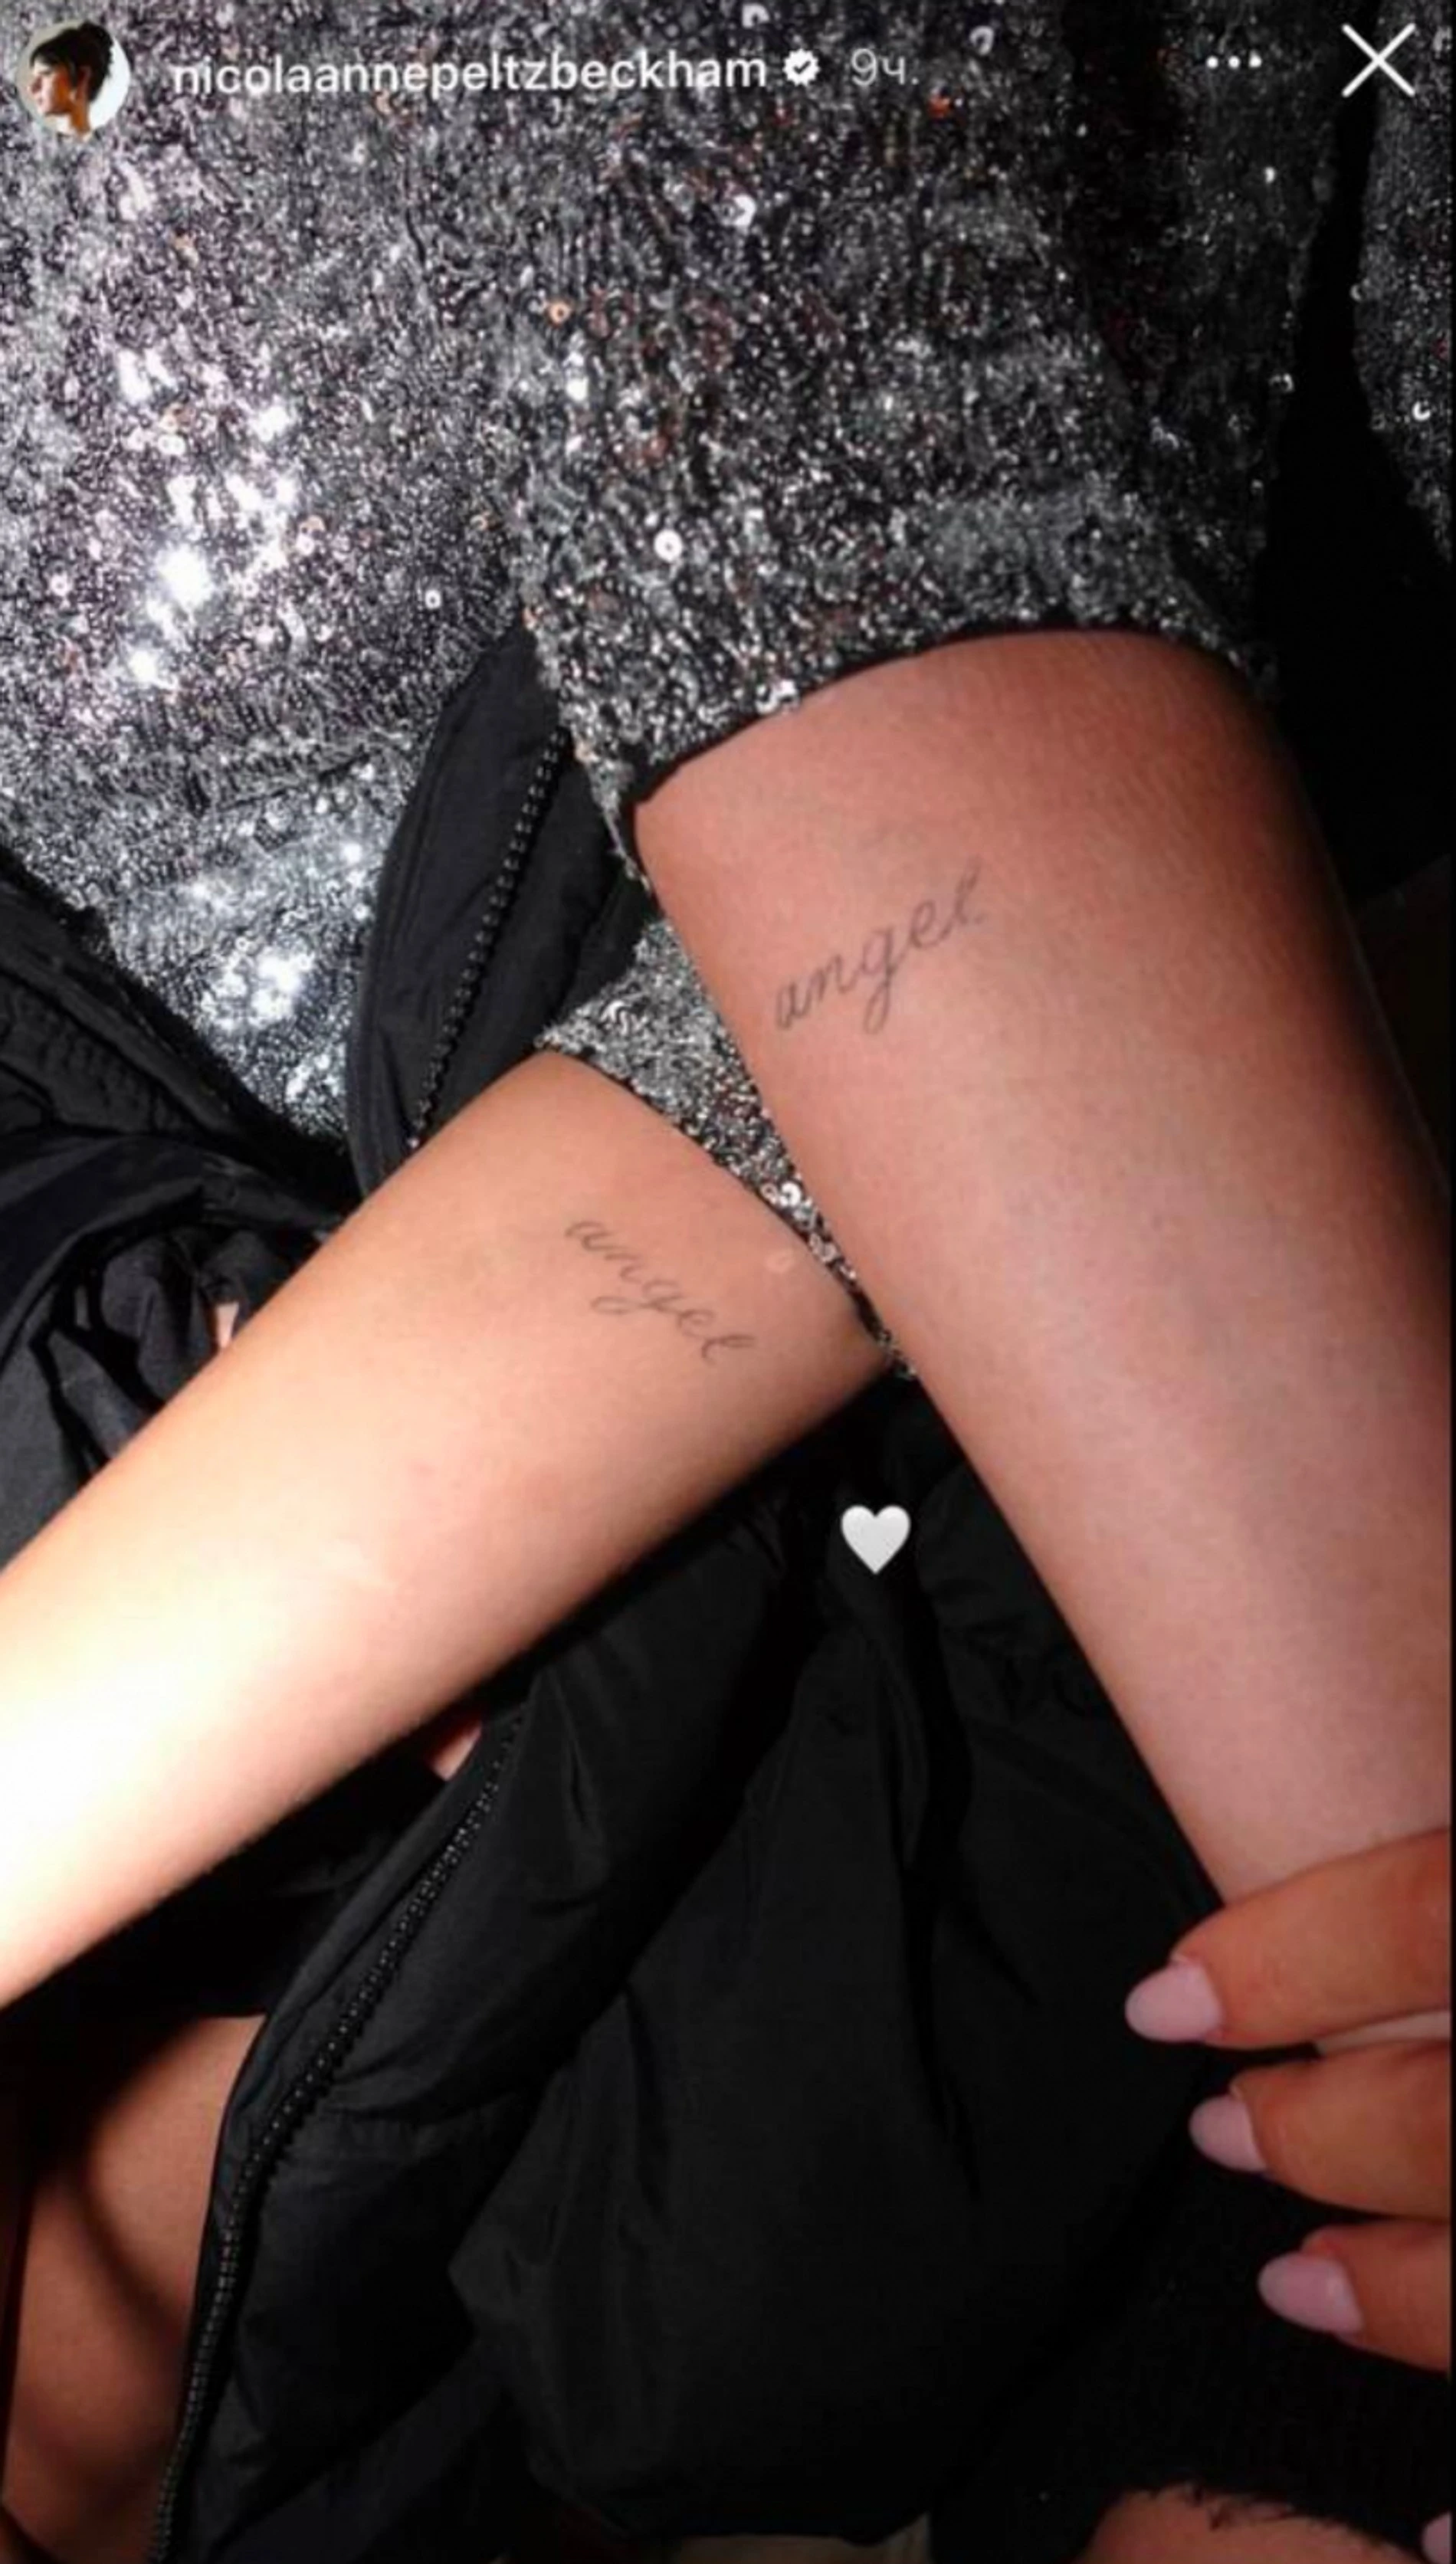 Одинаковые татуировки на руках у Селены Гомес и Николы Пельтц 
Фото: Инстаграм (запрещен в РФ) Николы Пельтц